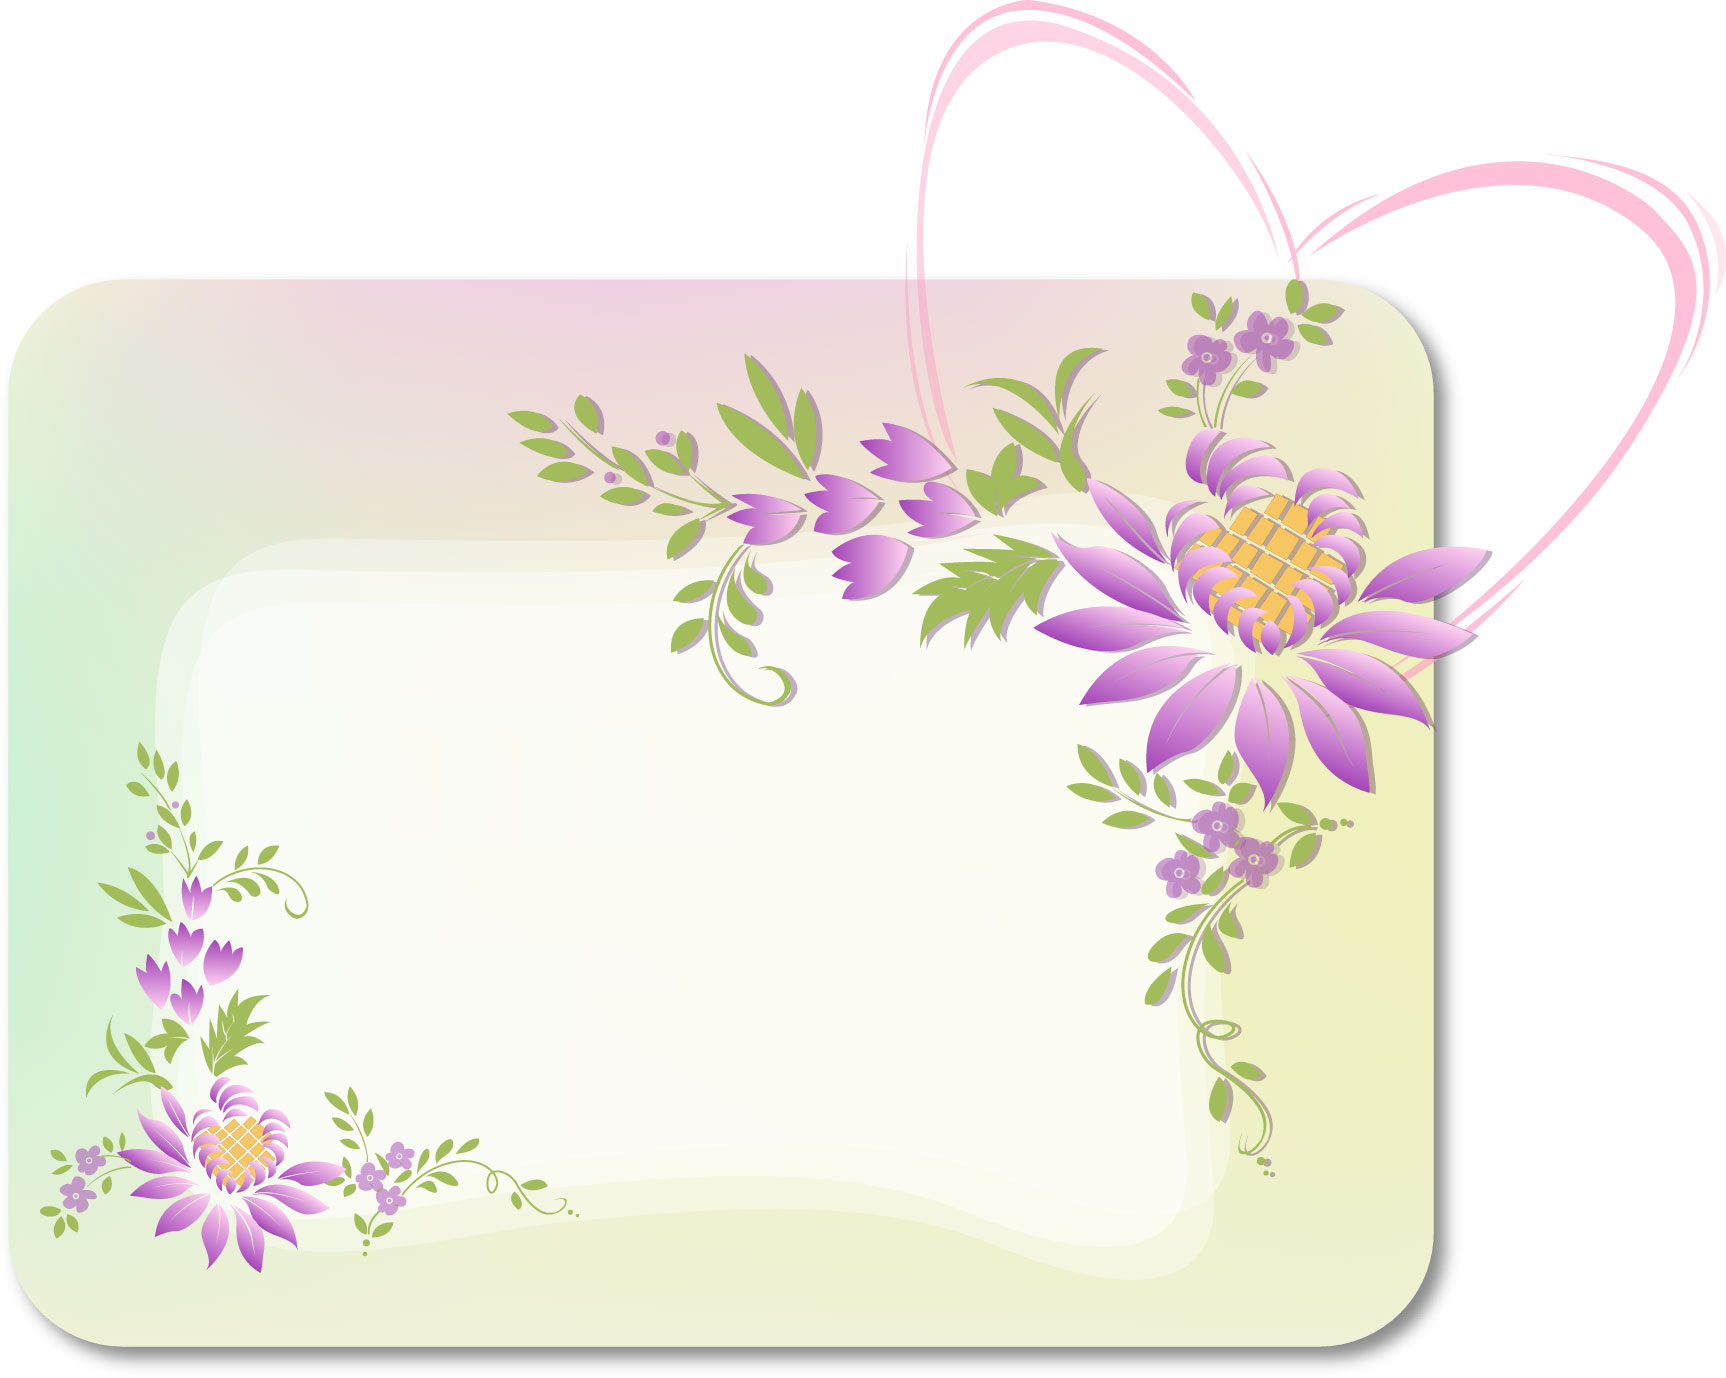 紫色の花のイラスト フリー素材 No 316 紫 ハート カード